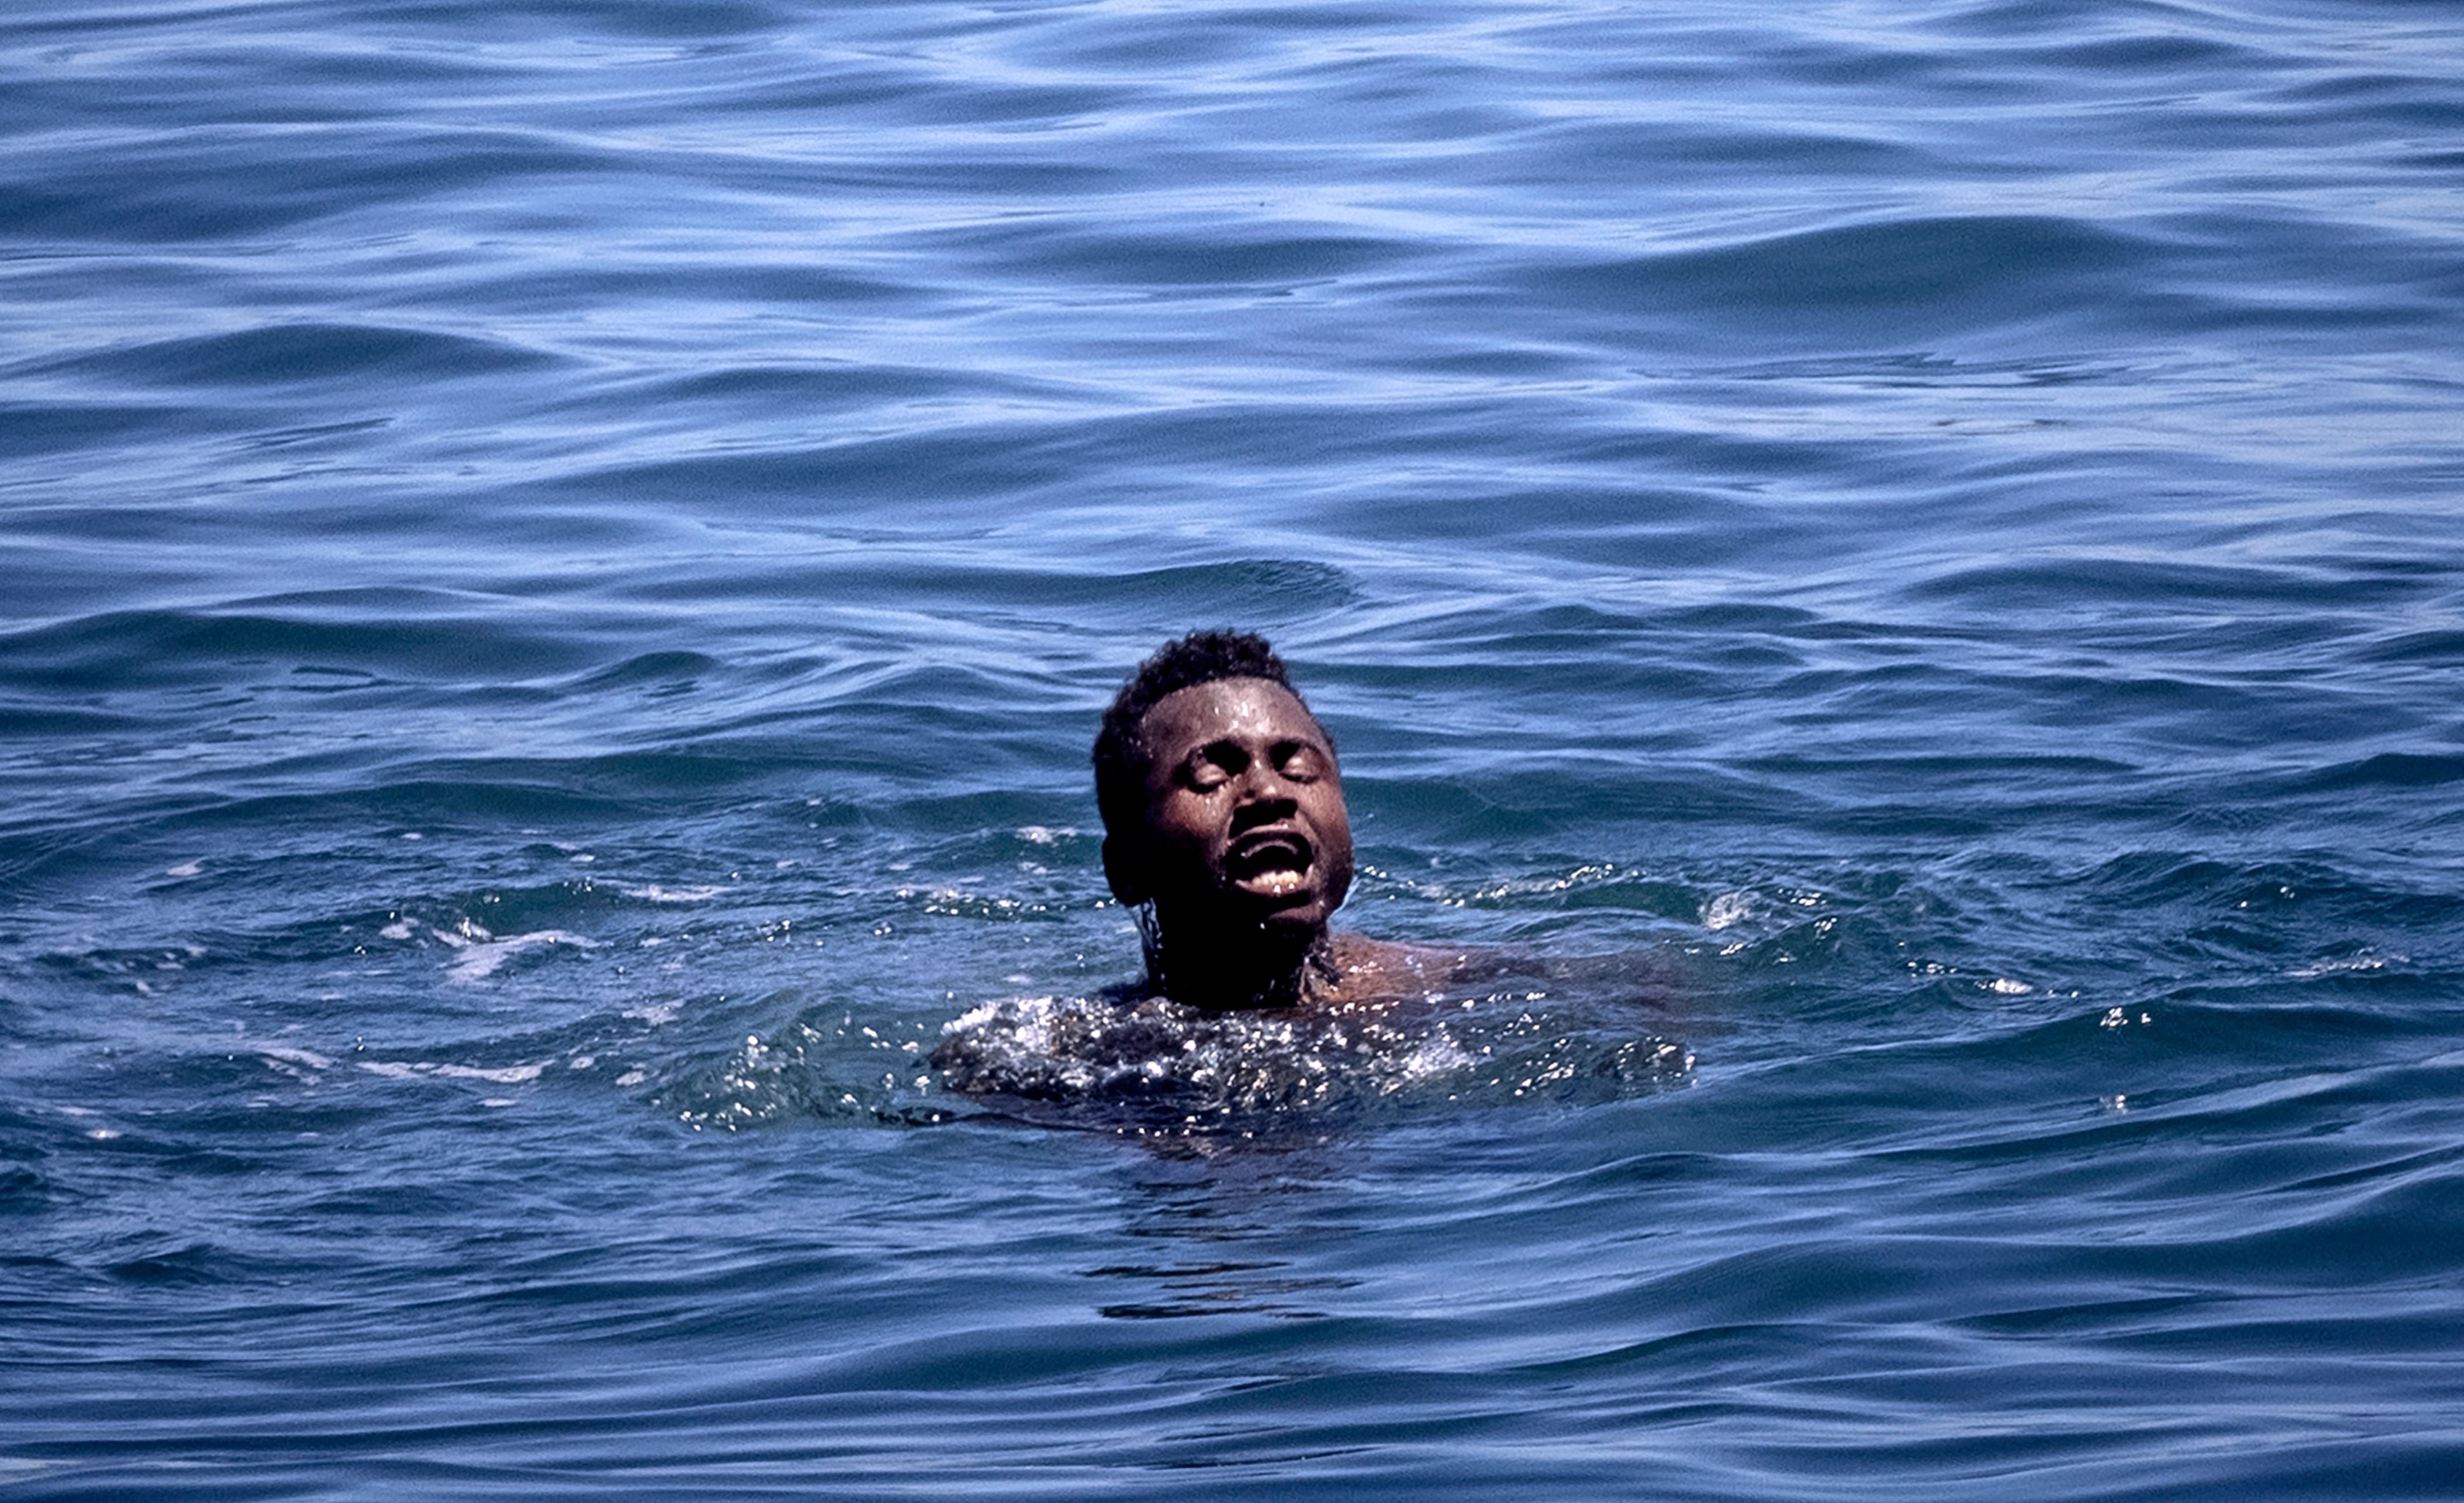 La secuencia de imágenes de un emotivo rescate en aguas de Marruecos